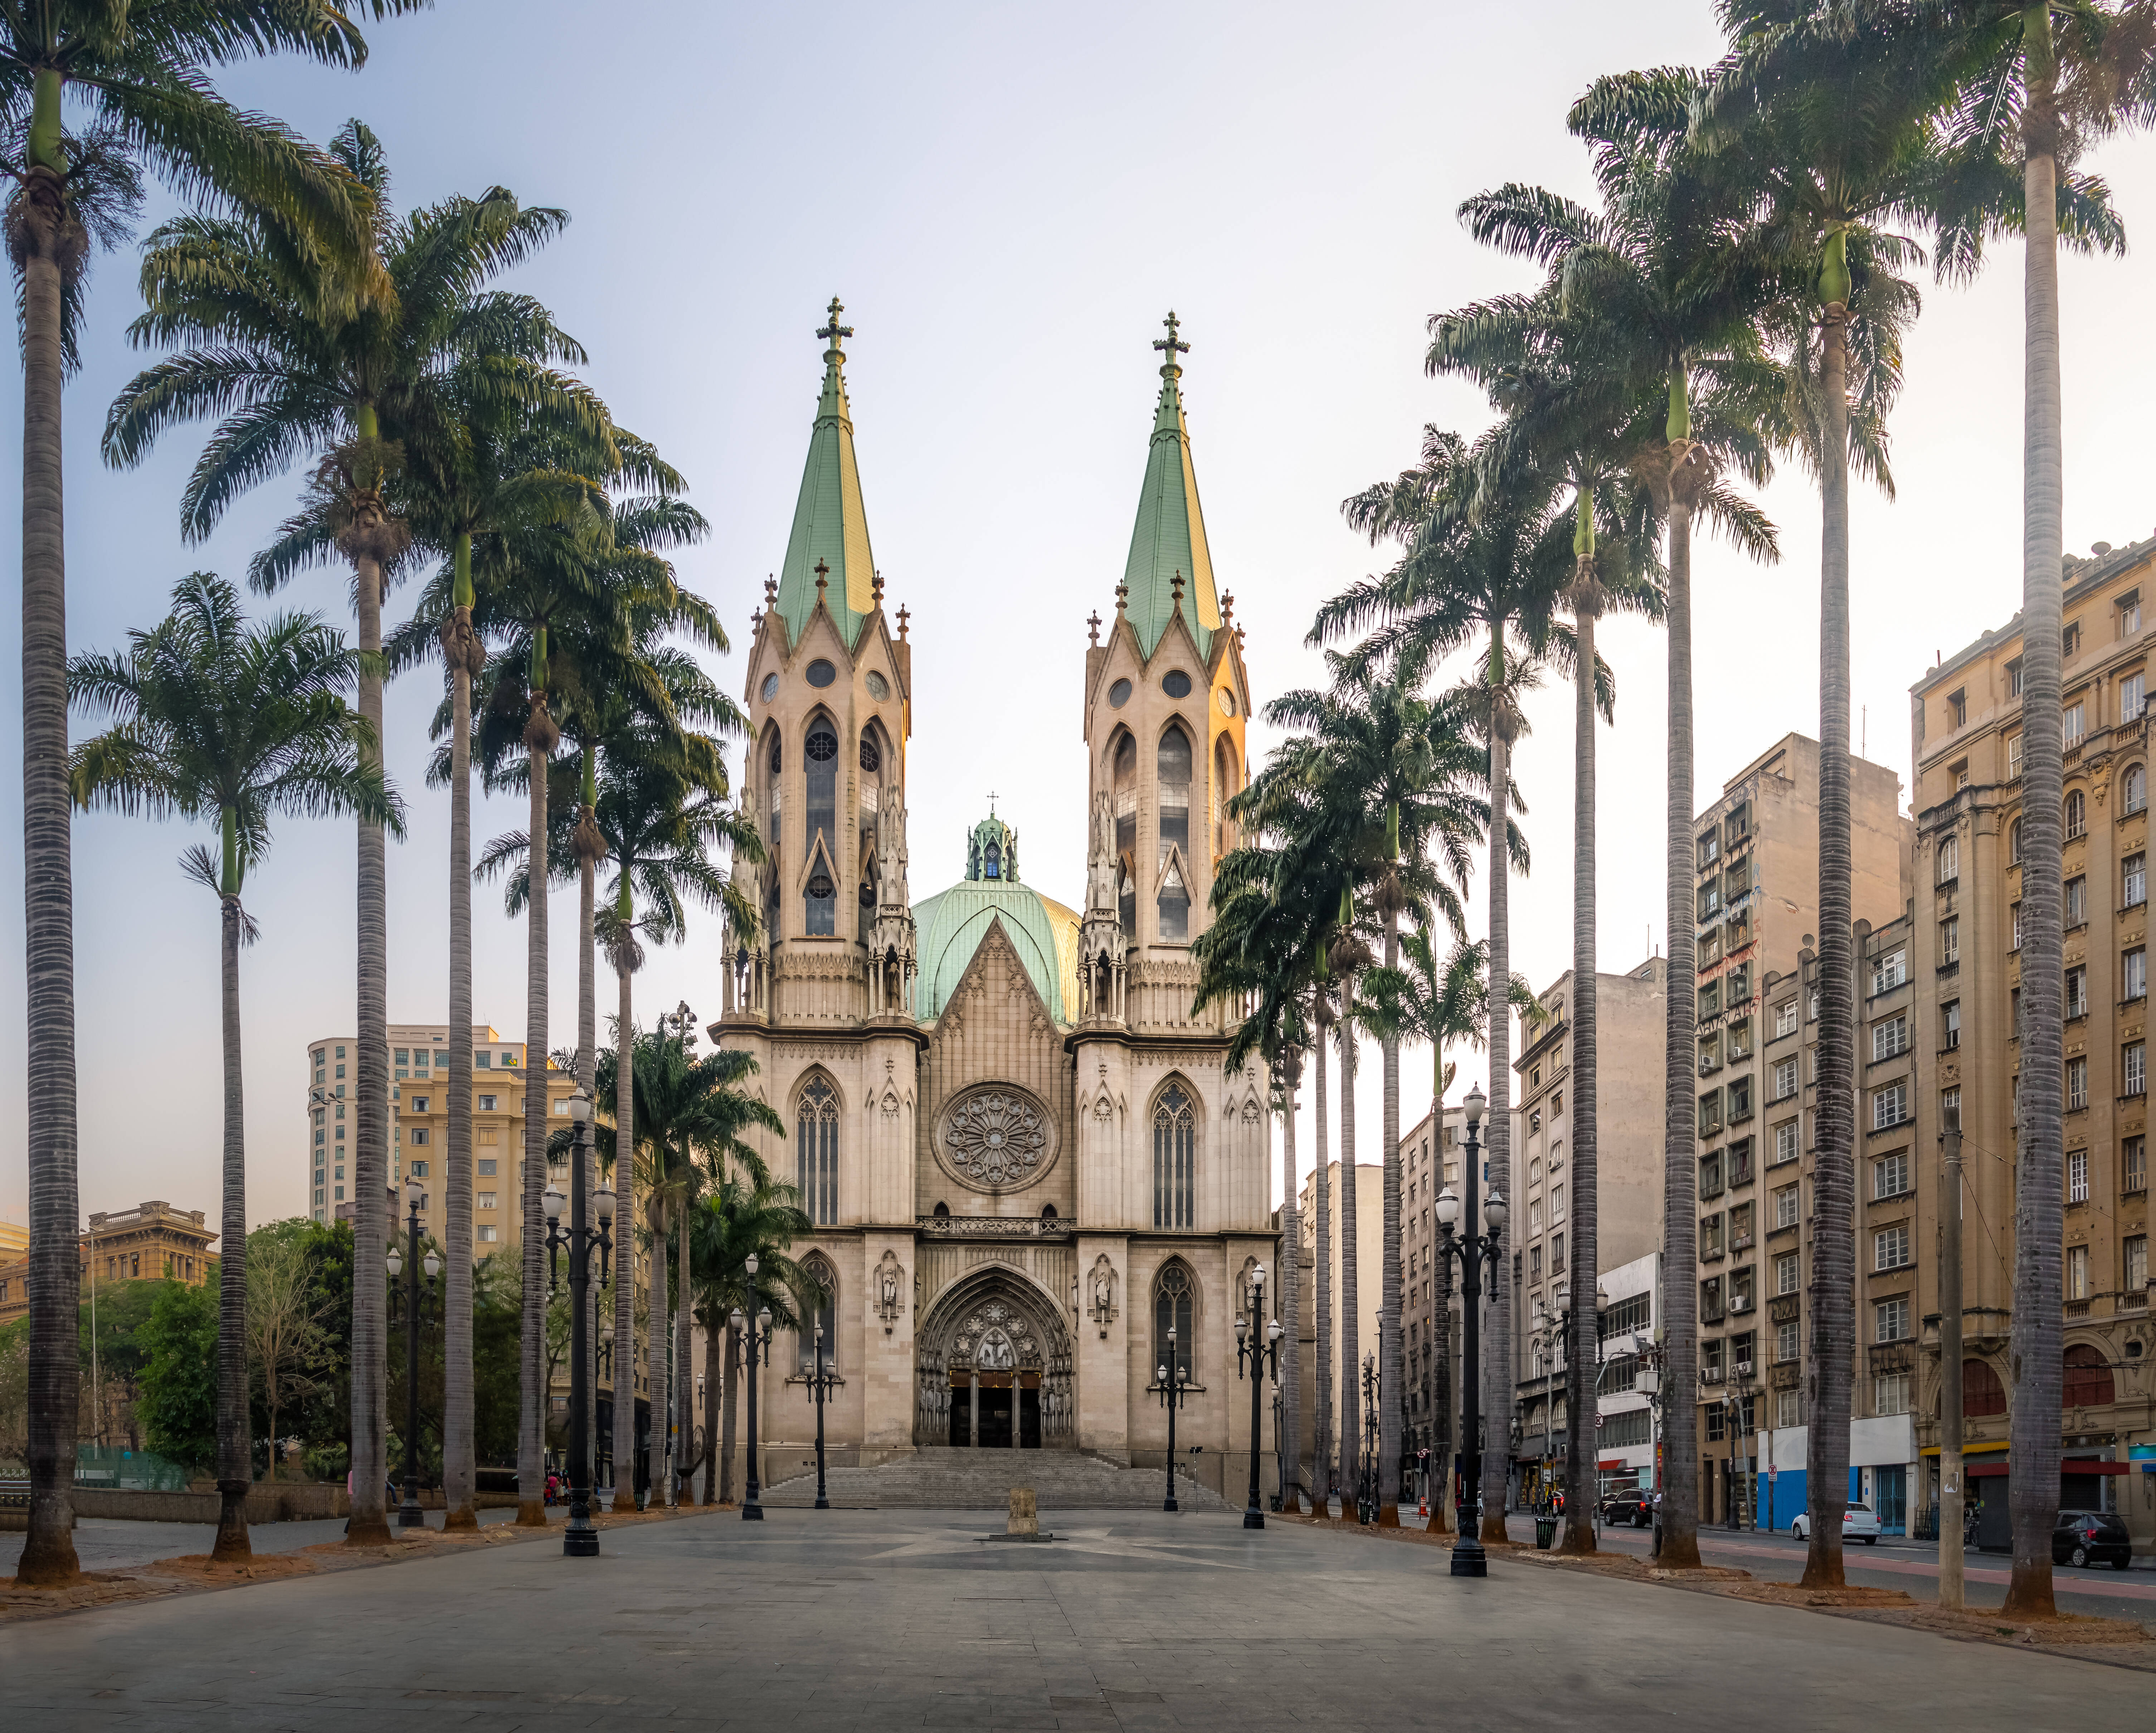 Uma das maiores igrejas de estilo neogótico do mundo, a Catedral da Sé é um dos principais pontos turísticos da lista